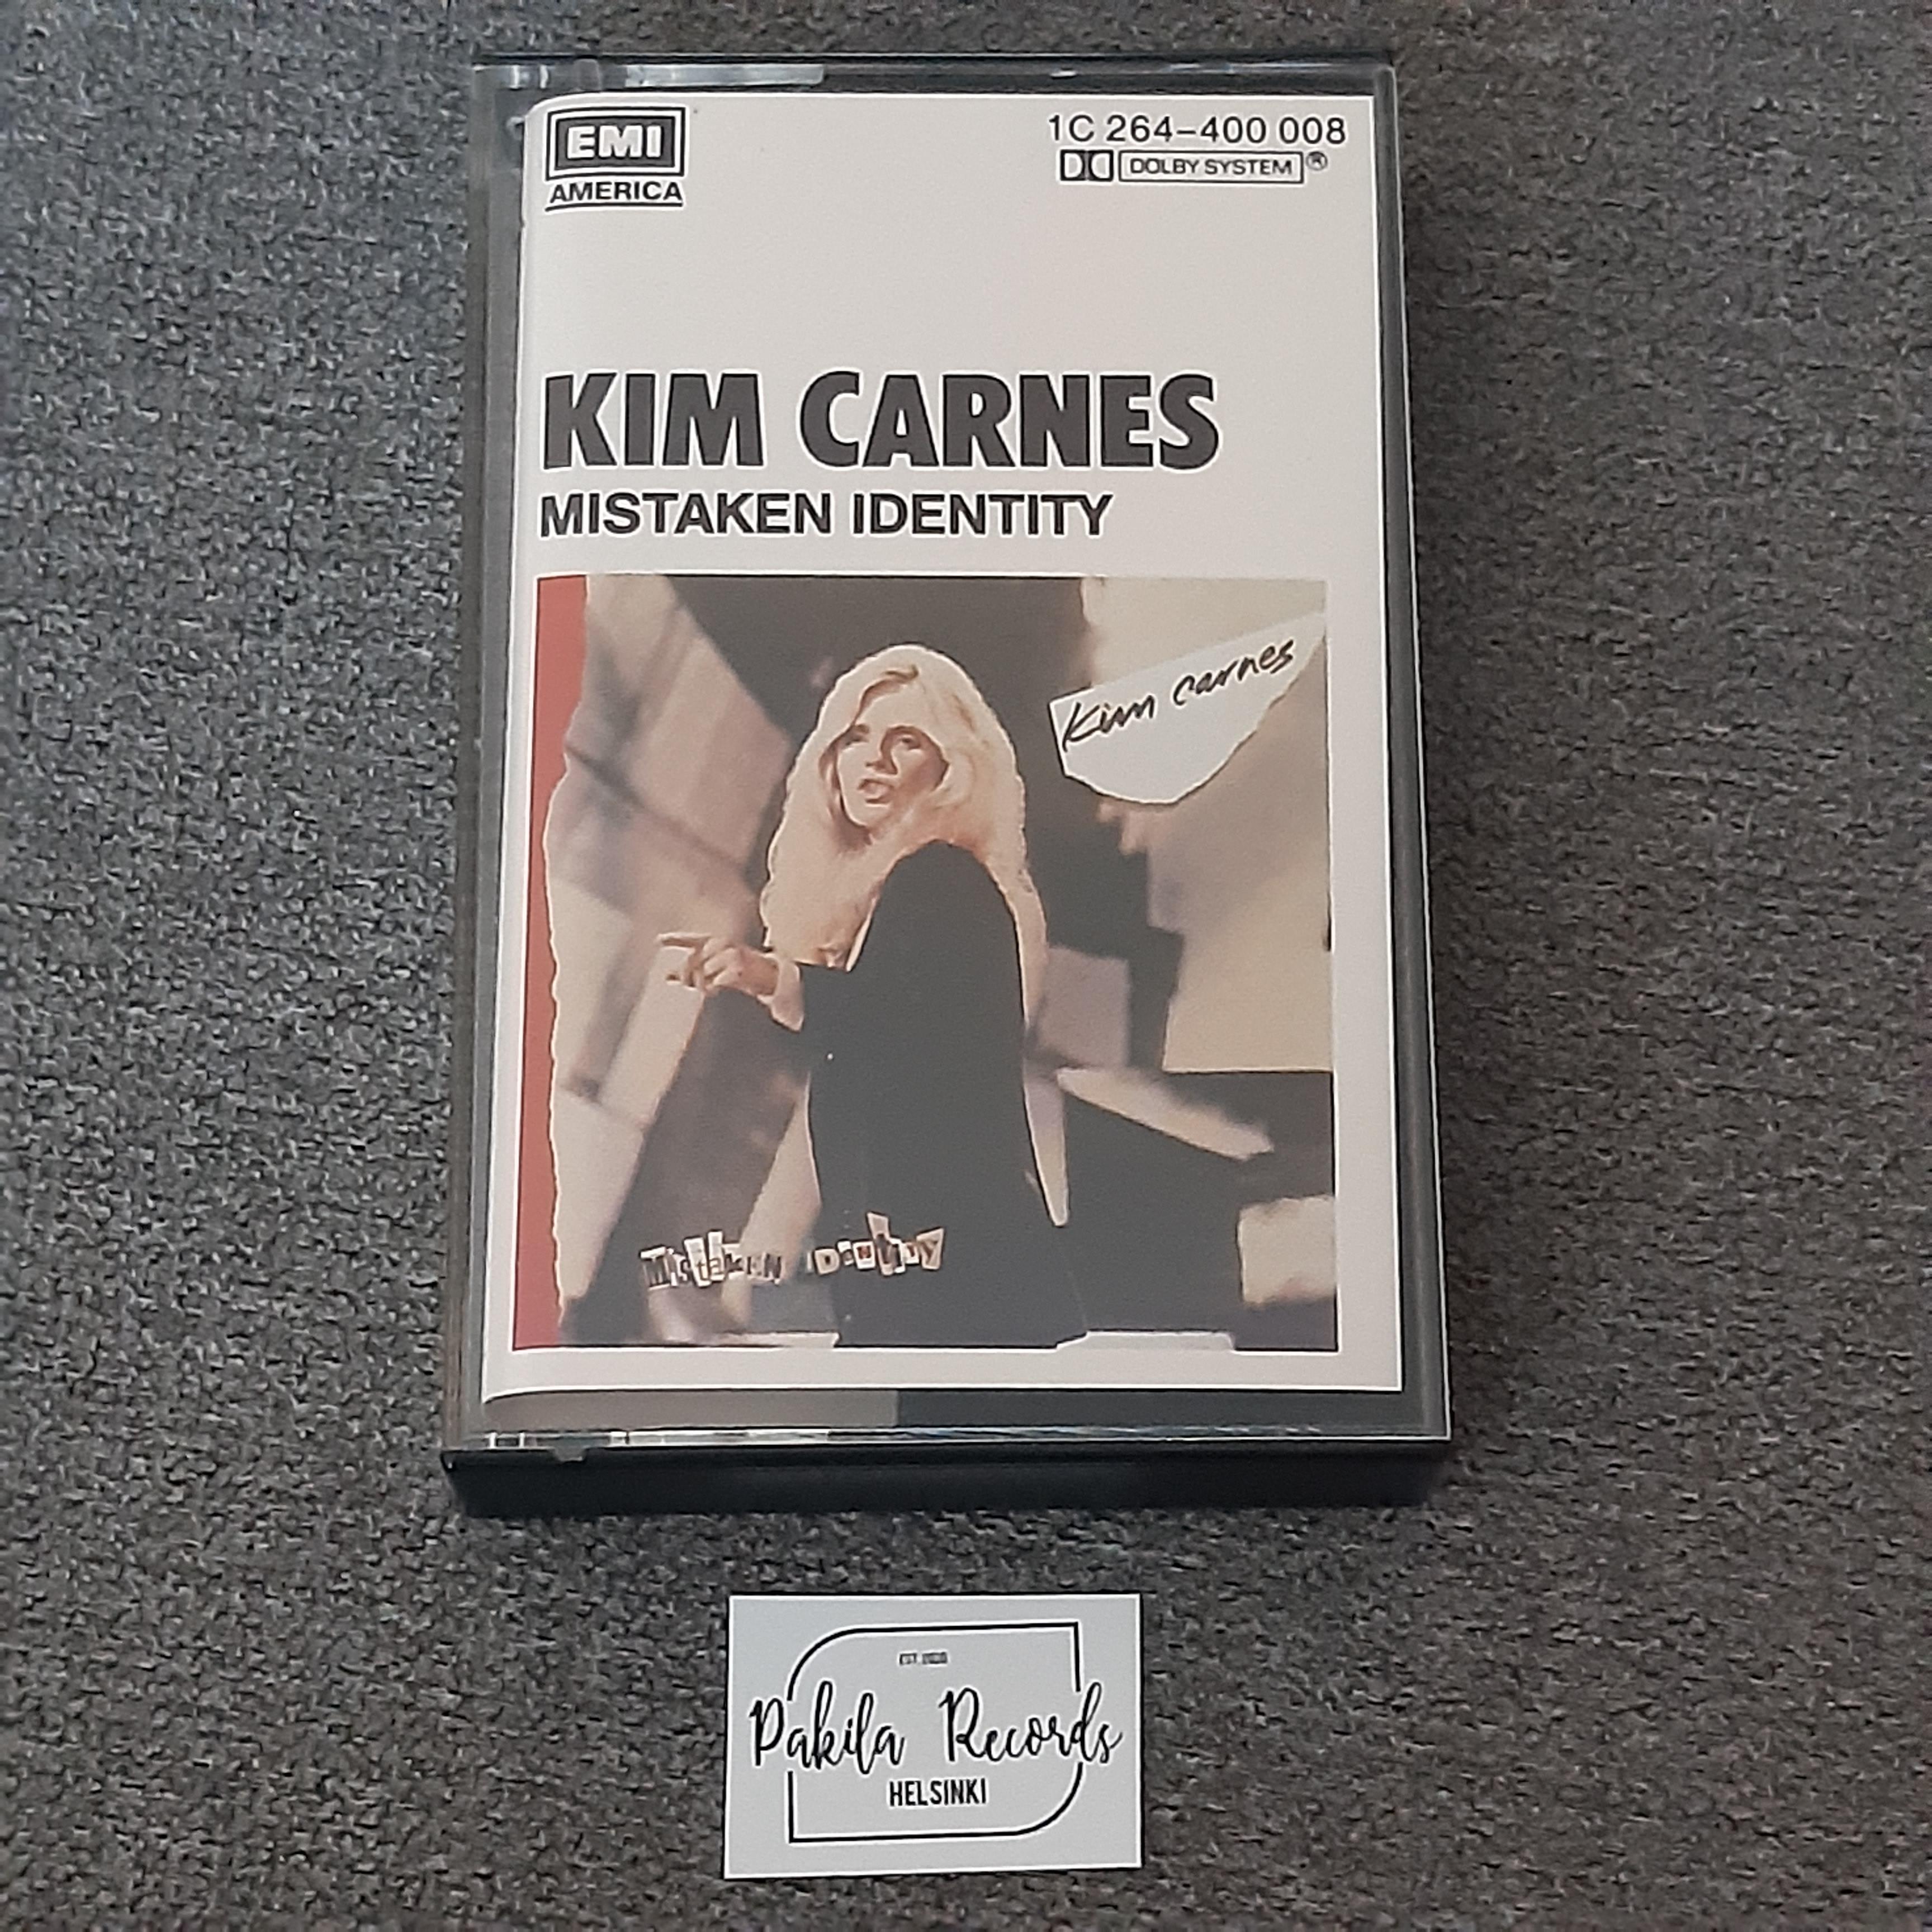 Kim Carnes - Mistaken Identity - Kasetti (käytetty)